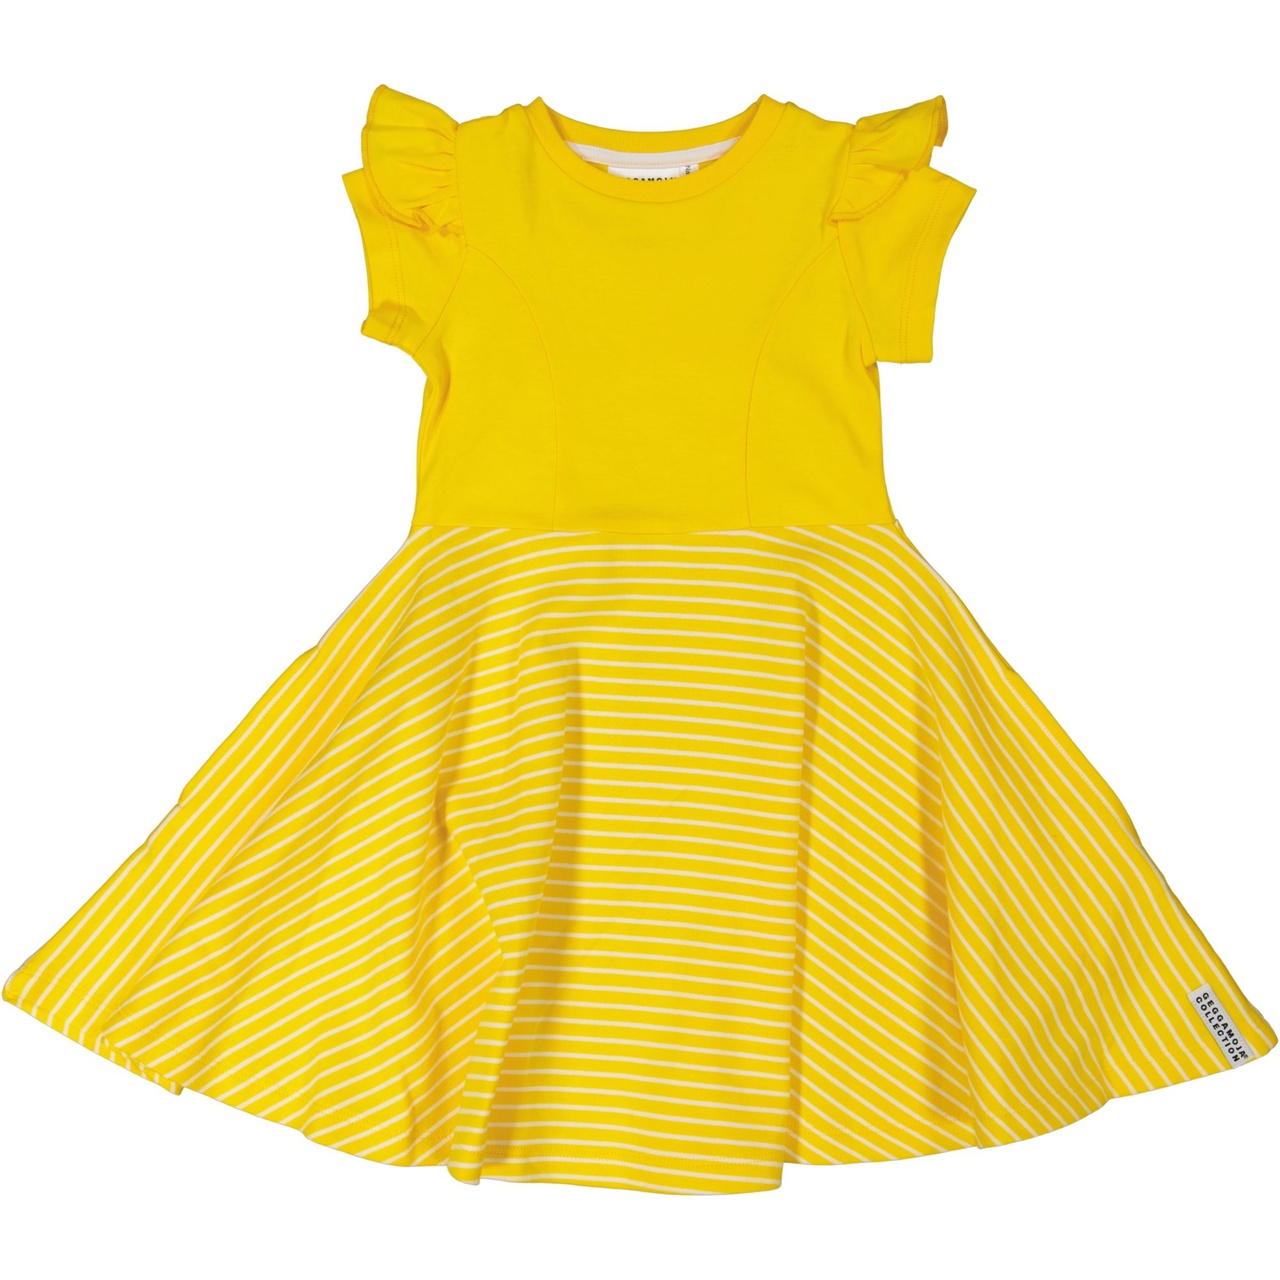 Flared dress Yellow/white 15